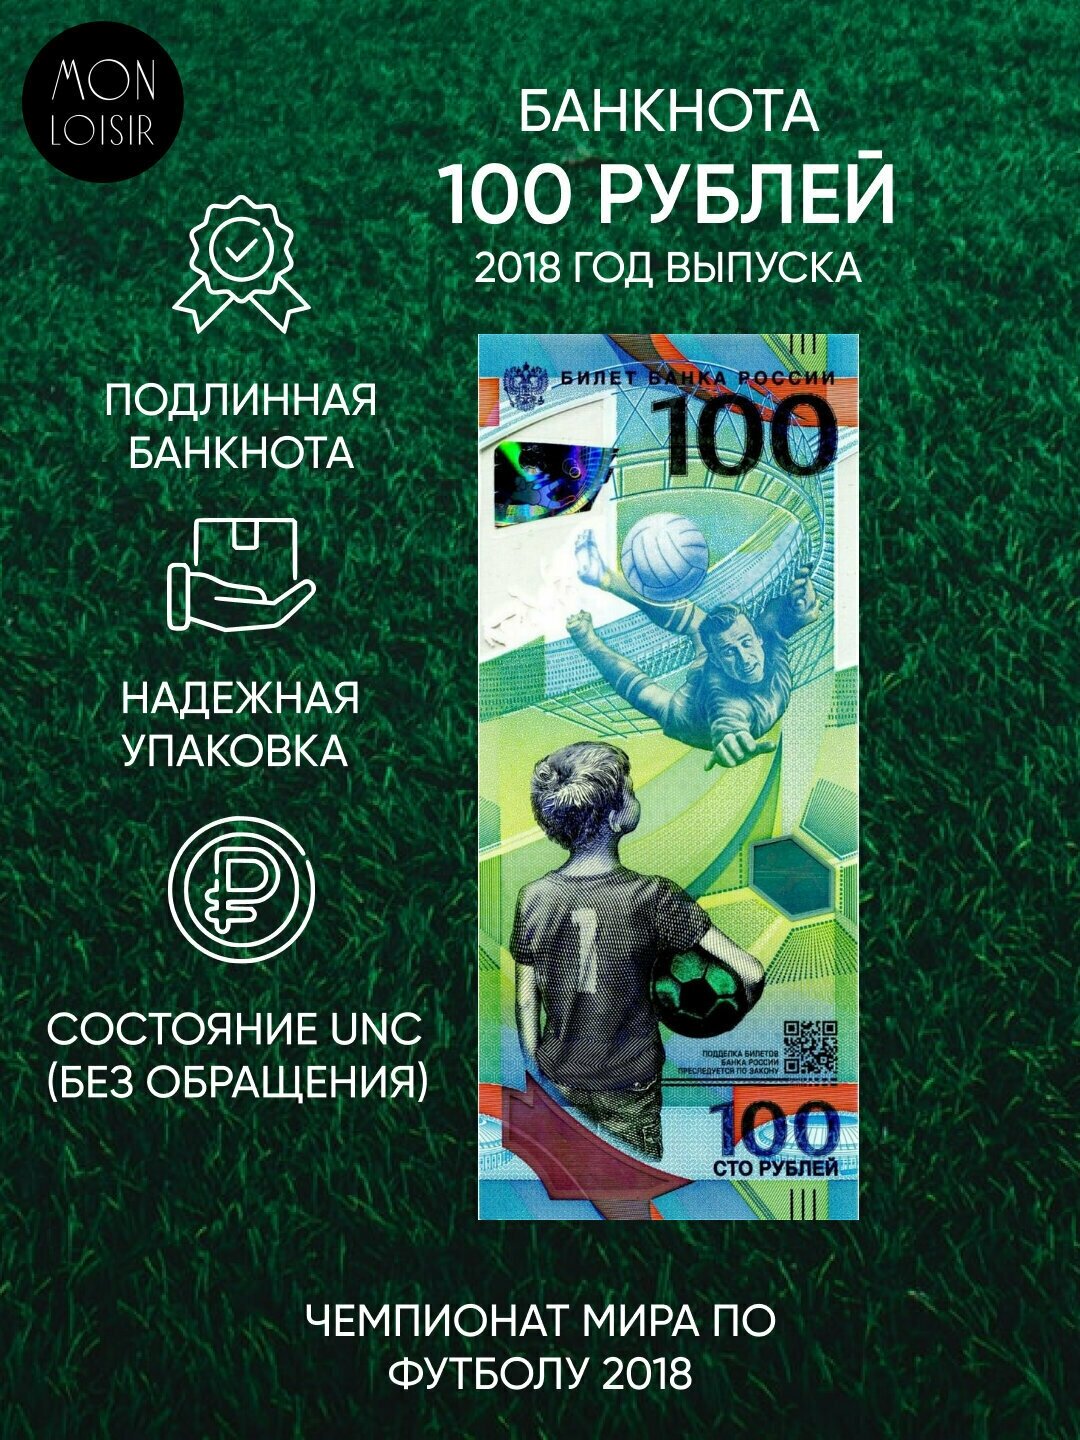 Подлинная банкнота 100 рублей Футбол, Чемпионат мира по футболу 2018 г. в. Купюра в состоянии aUNC (без обращения)